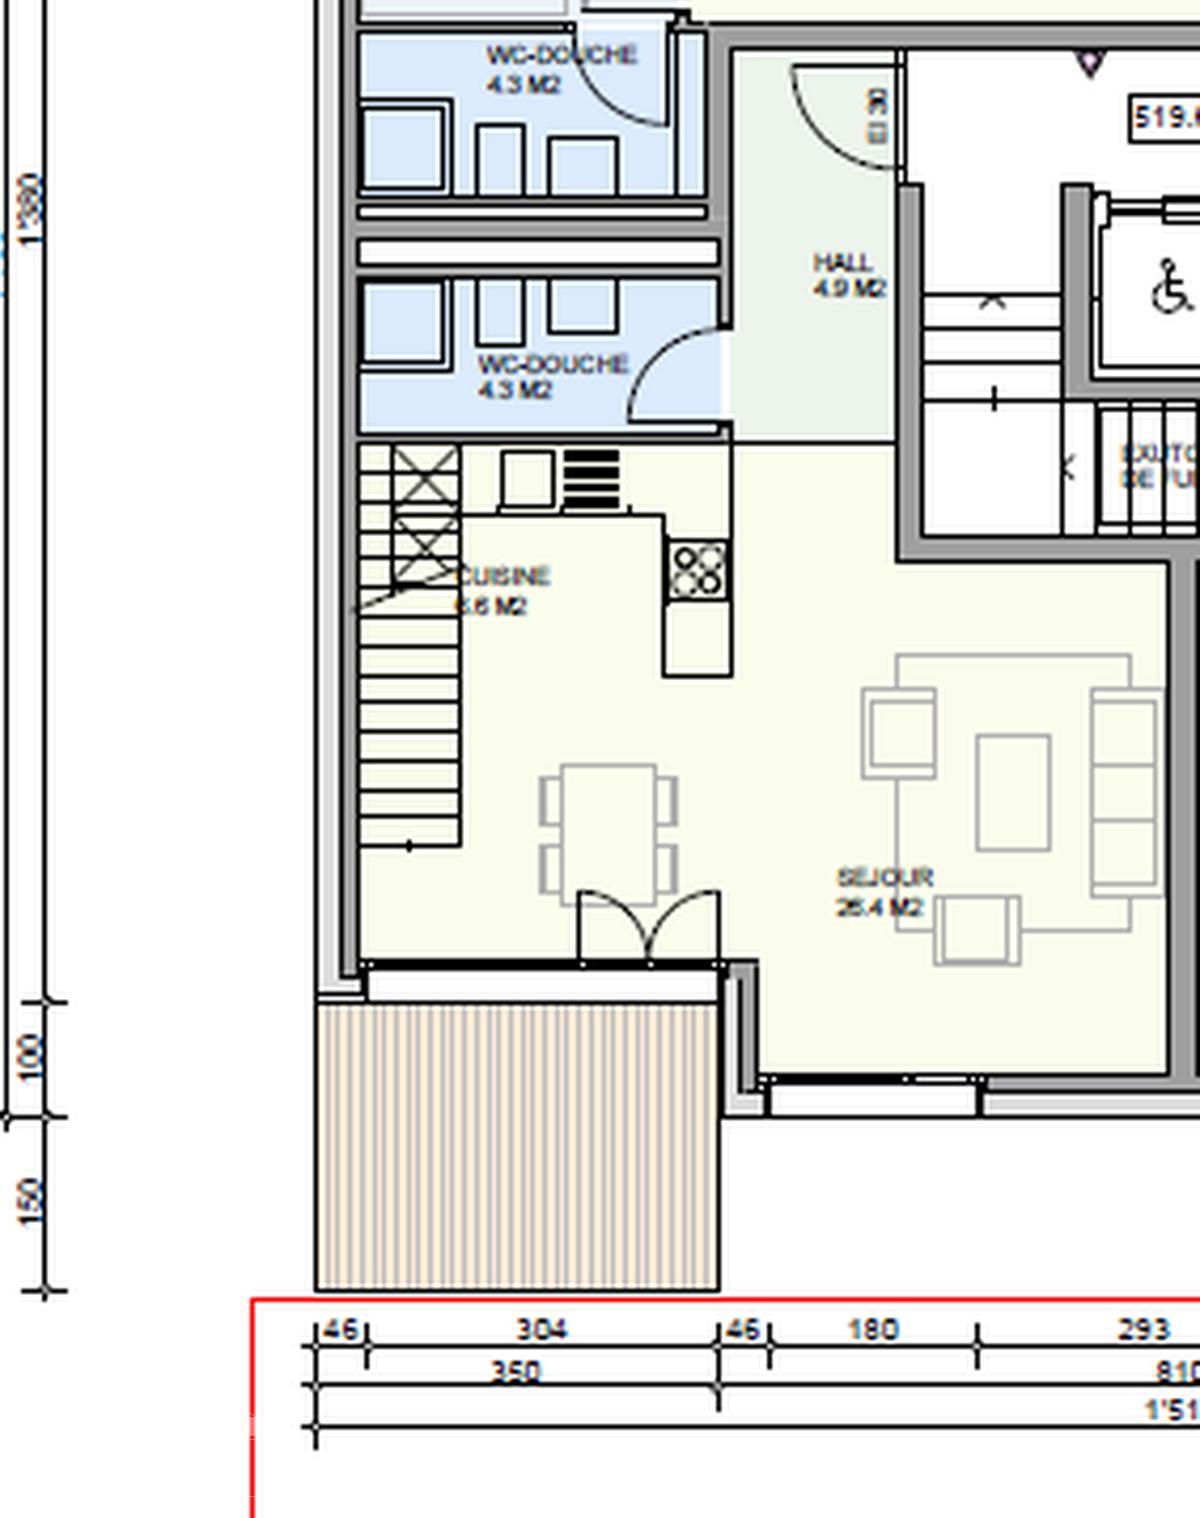 À louer : Appartement 2.5 Pieces Moudon - Ref : 208772.3003 | Naef Immobilier